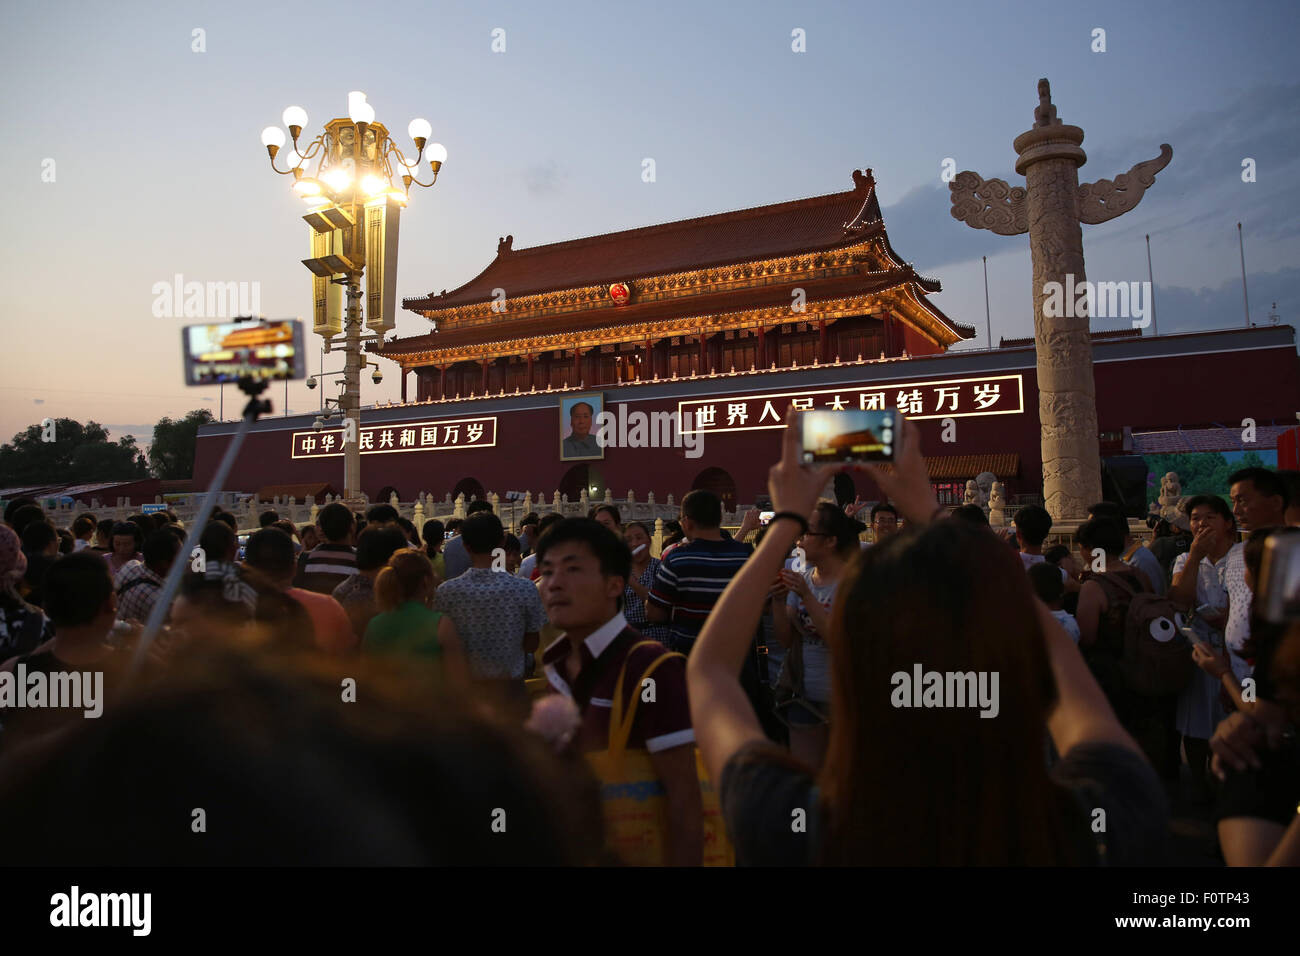 Pechino, Cina. 20 agosto 2015. Un file immagine resi disponibili su 21 Agosto 2015 mostra i visitatori e i turisti a scattare foto di Tiananmen Gate con il ritratto del Presidente Mao Zedong sulla Piazza Tian'anmen a Pechino in Cina, 20 agosto 2015. Foto: CHRISTIAN CHARISIUS/dpa/Alamy Live News Foto Stock